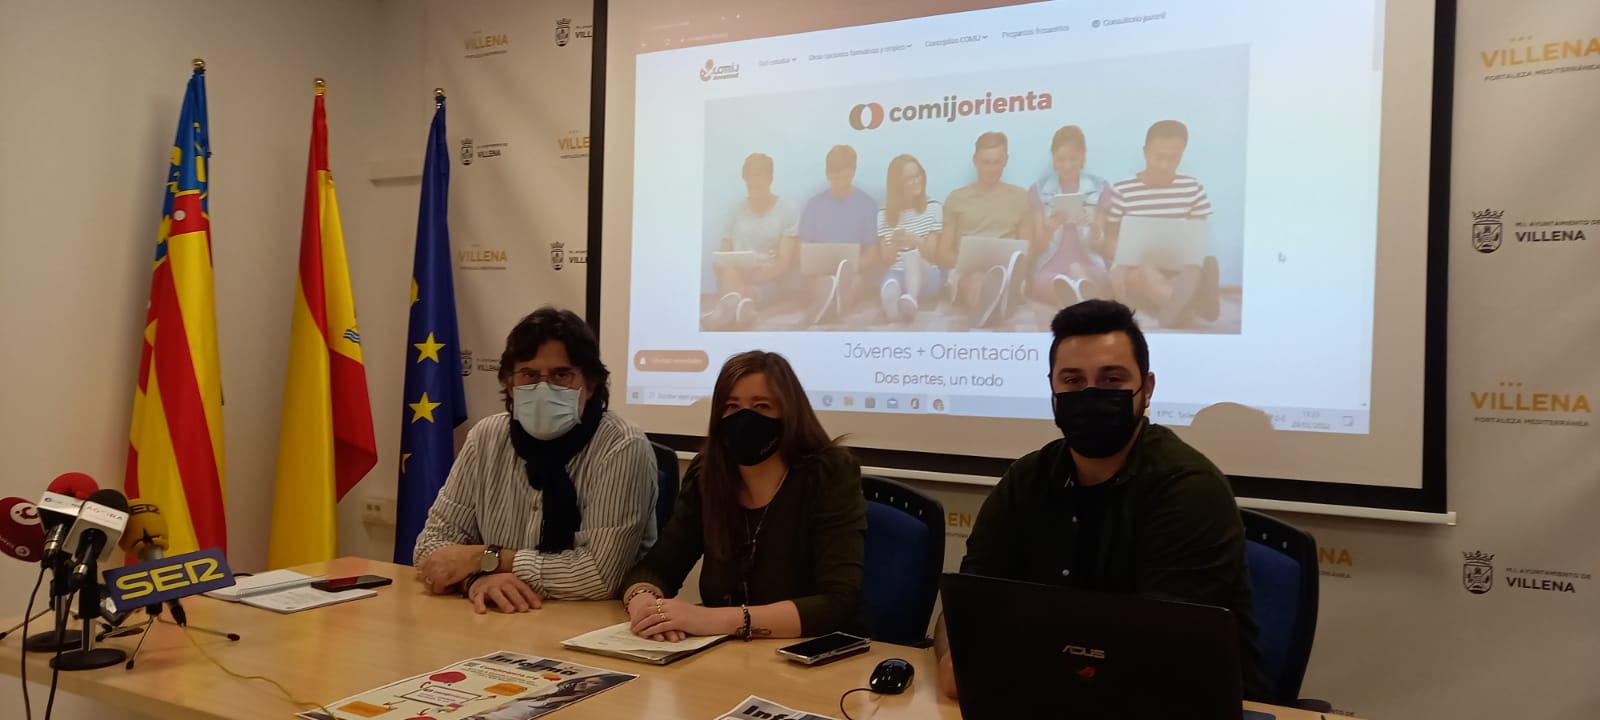 Villena presenta la web juvenil ‘comijorienta.org’ para ofrecer información educativa y laboral